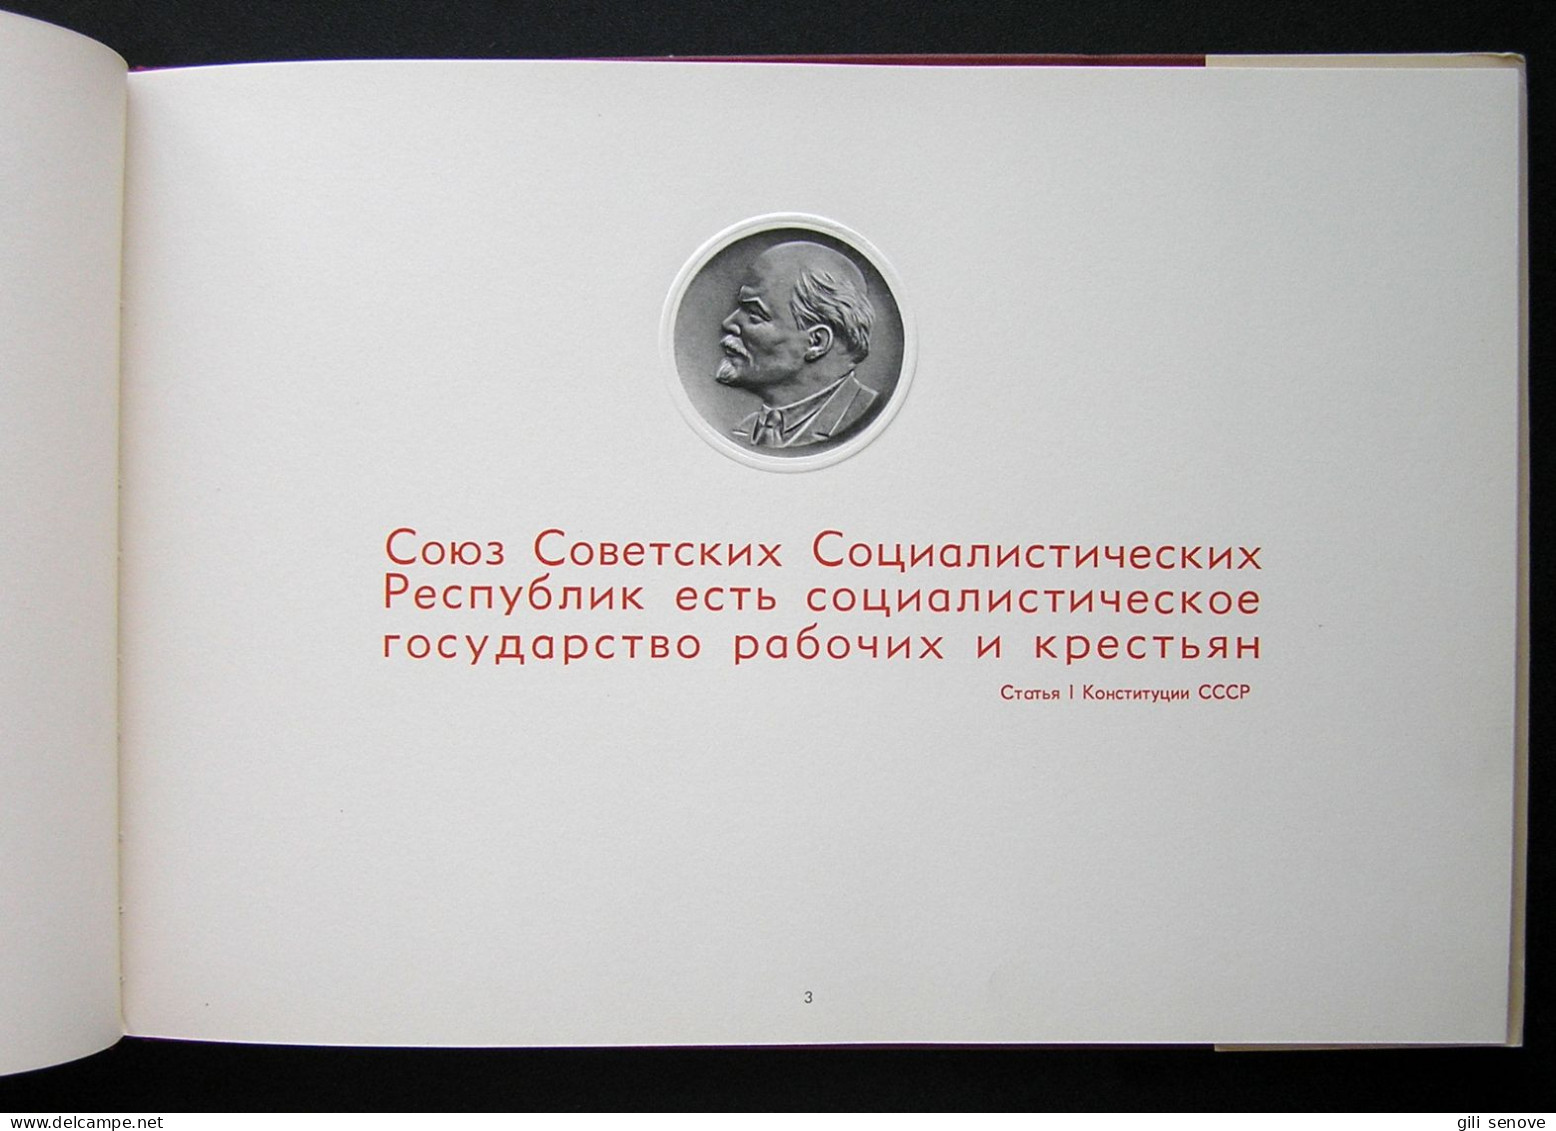 Russian Book / Государственный герб СССР 1959 - Lingue Slave